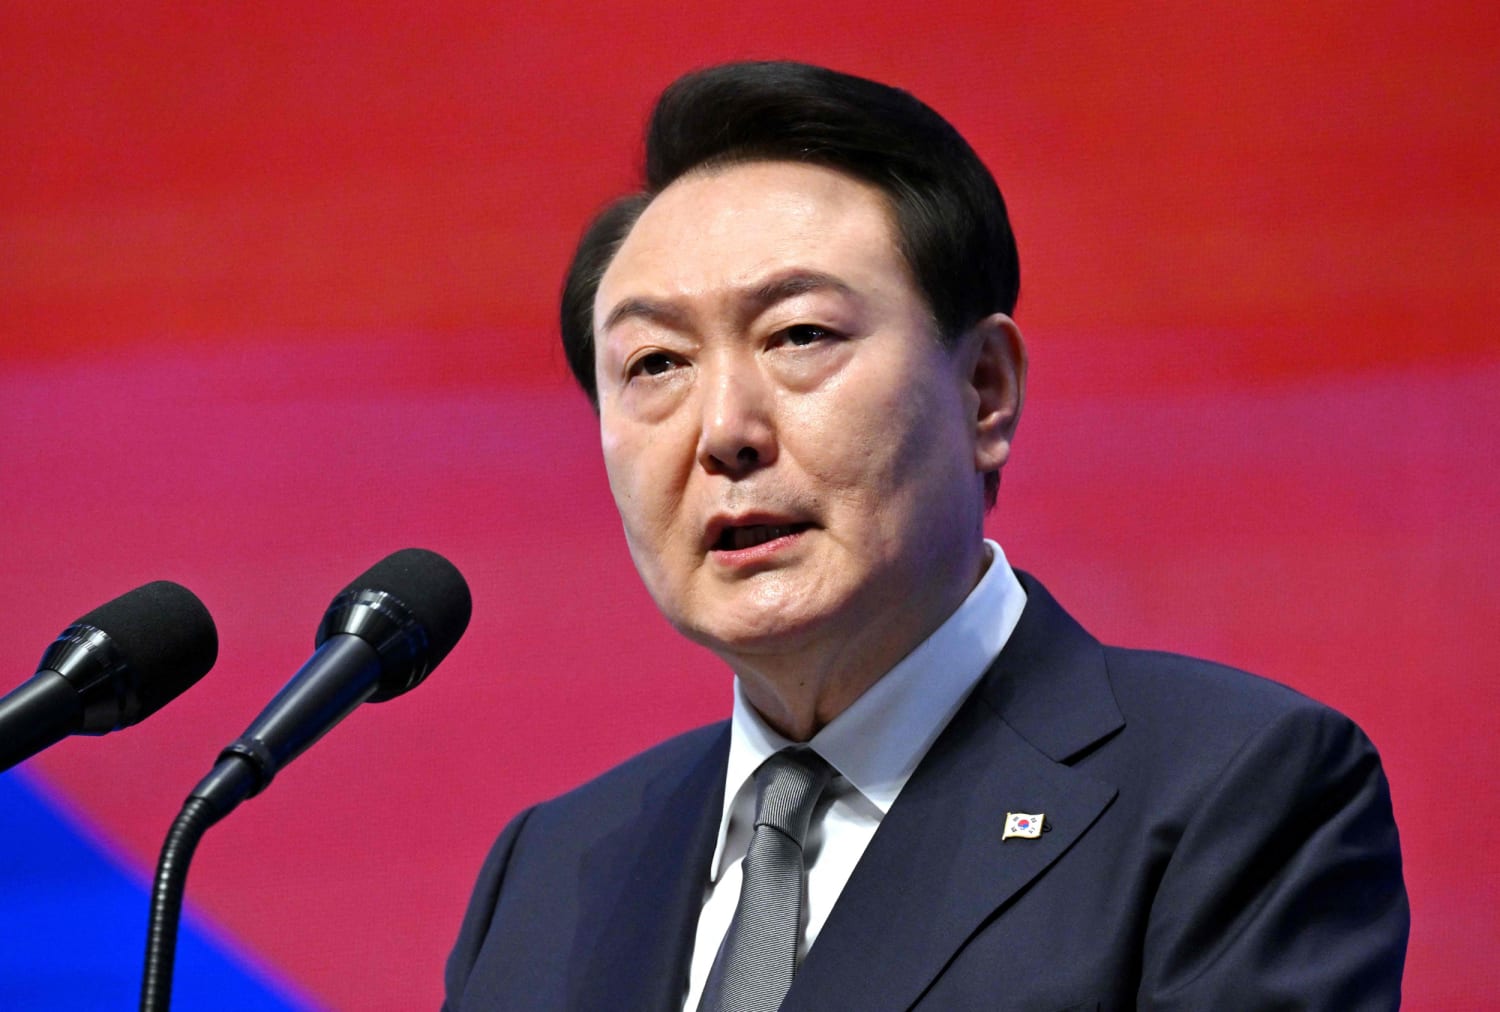 최고 의원들은 한국 대통령에게 의회 연설을 촉구했습니다.